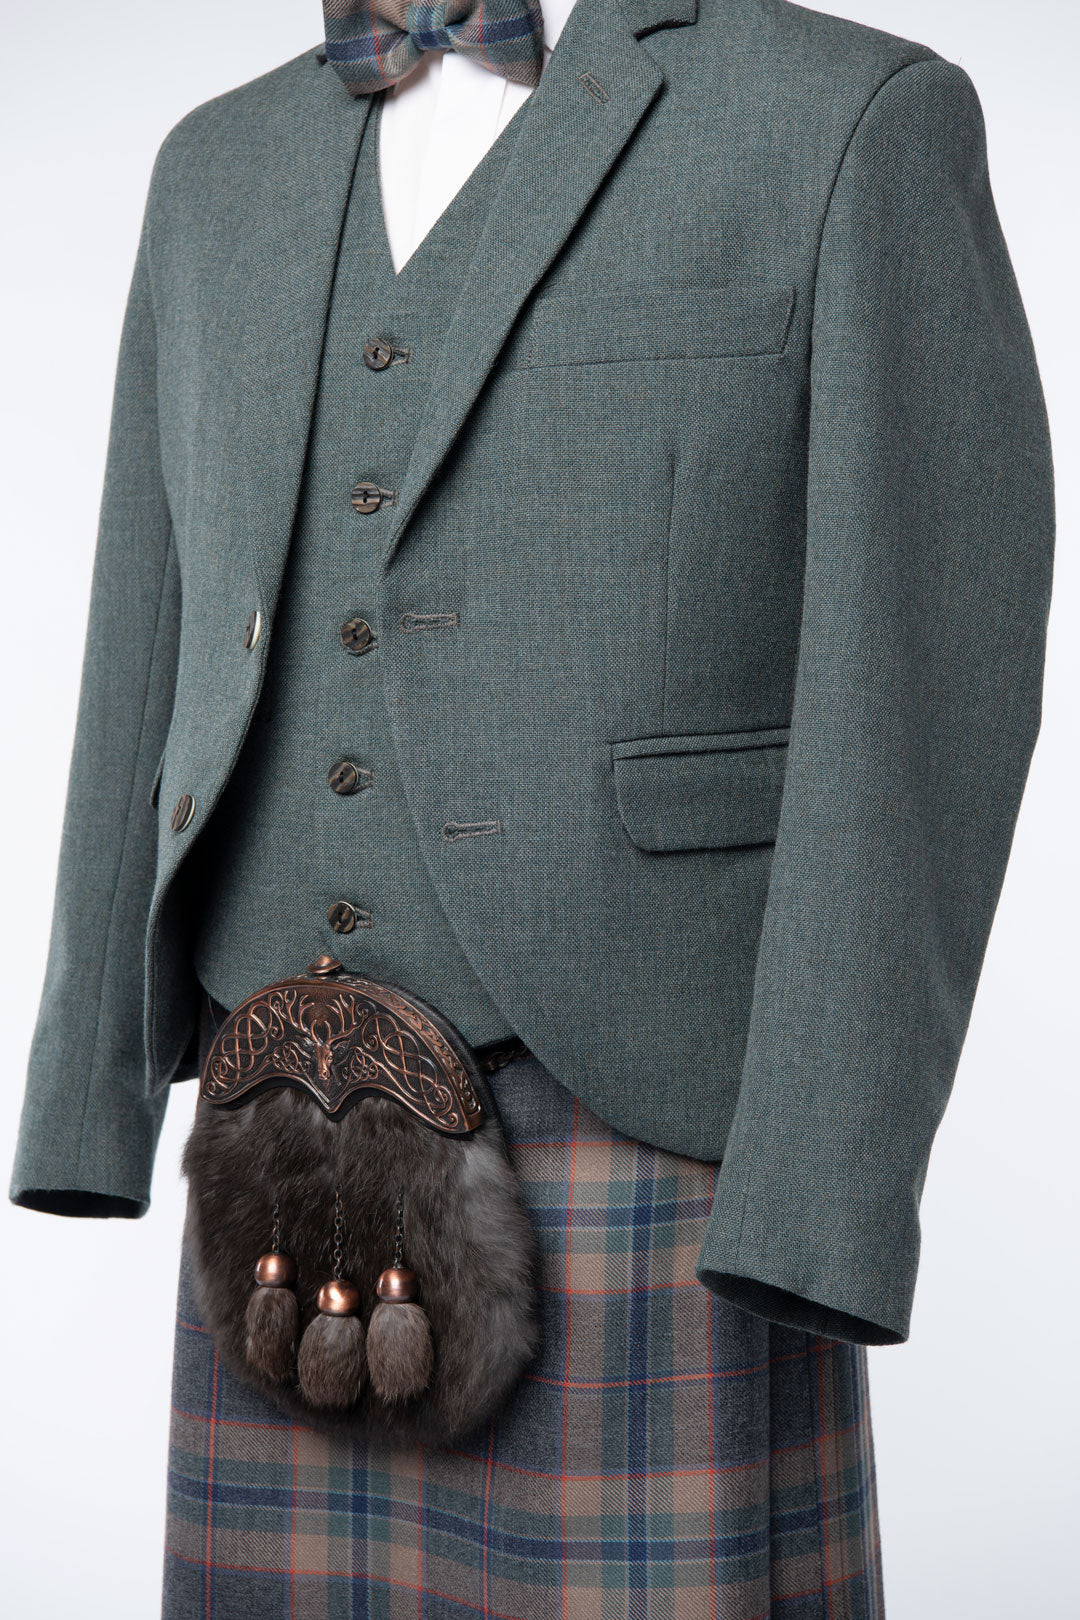 Tarbert Tweed Kilt Jacket and Waistcoat - MacGregor and MacDuff